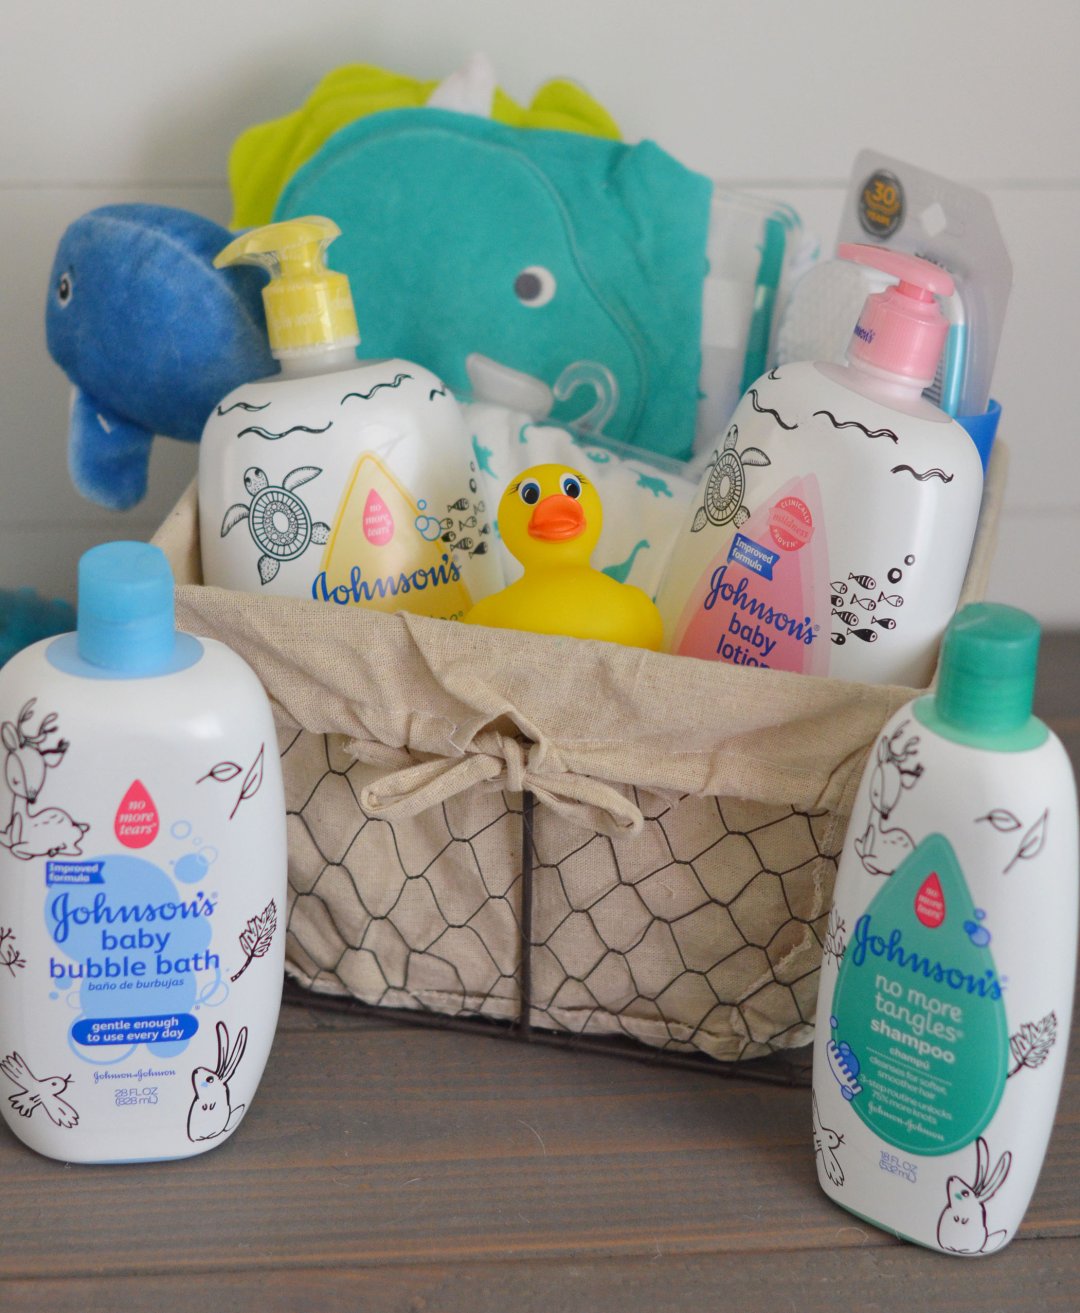 Make a Baby Bath time Kit!